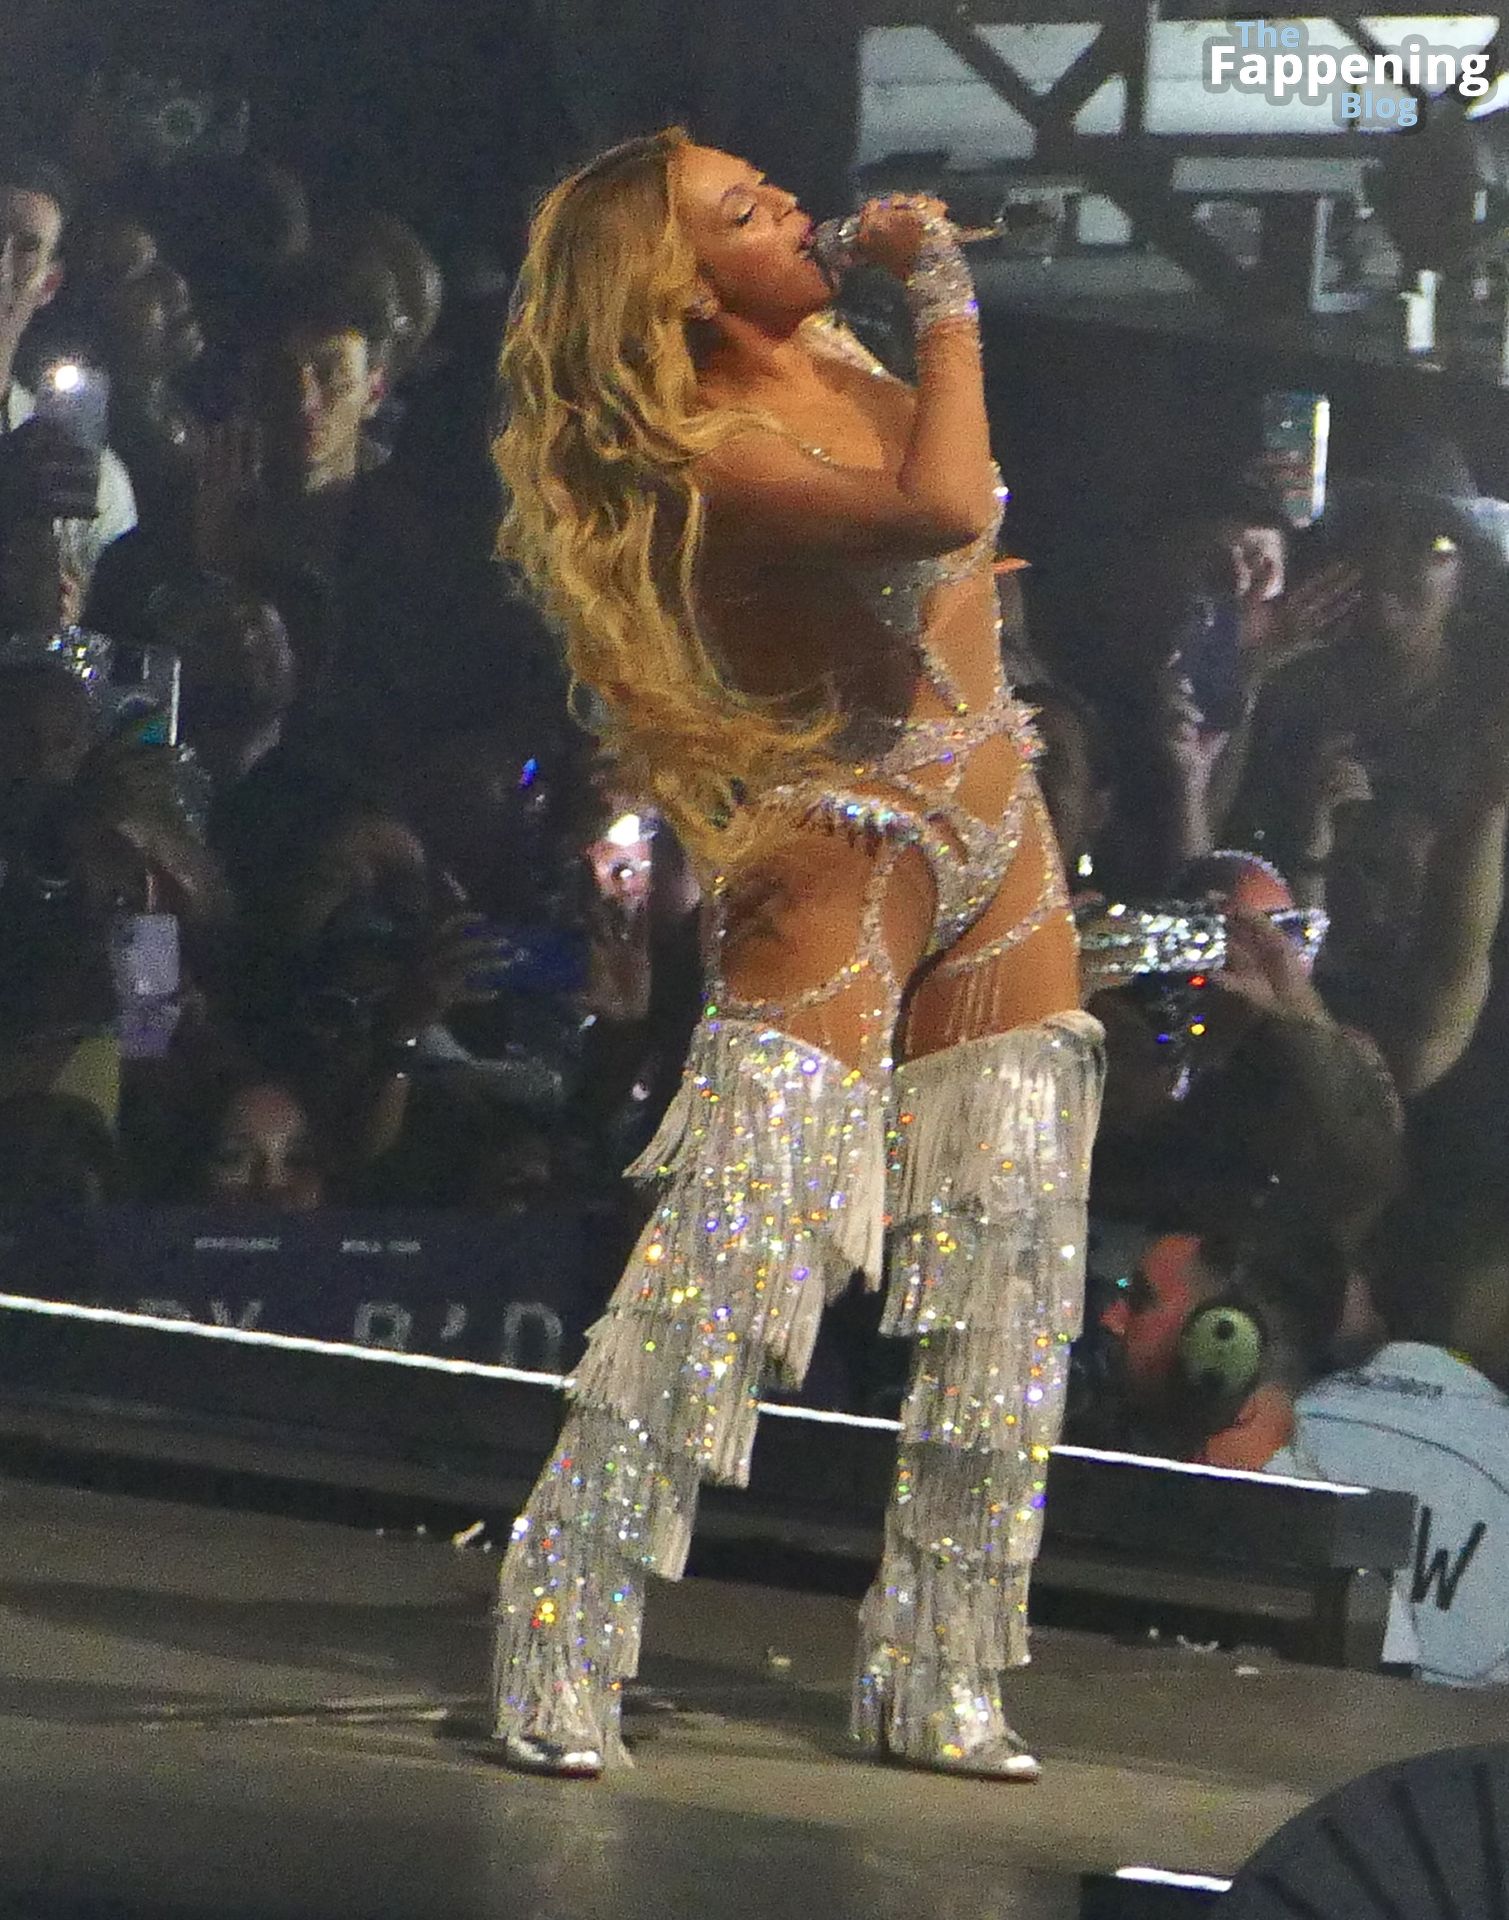 Beyoncé-Sexy-51-The-Fappening-Blog.jpg